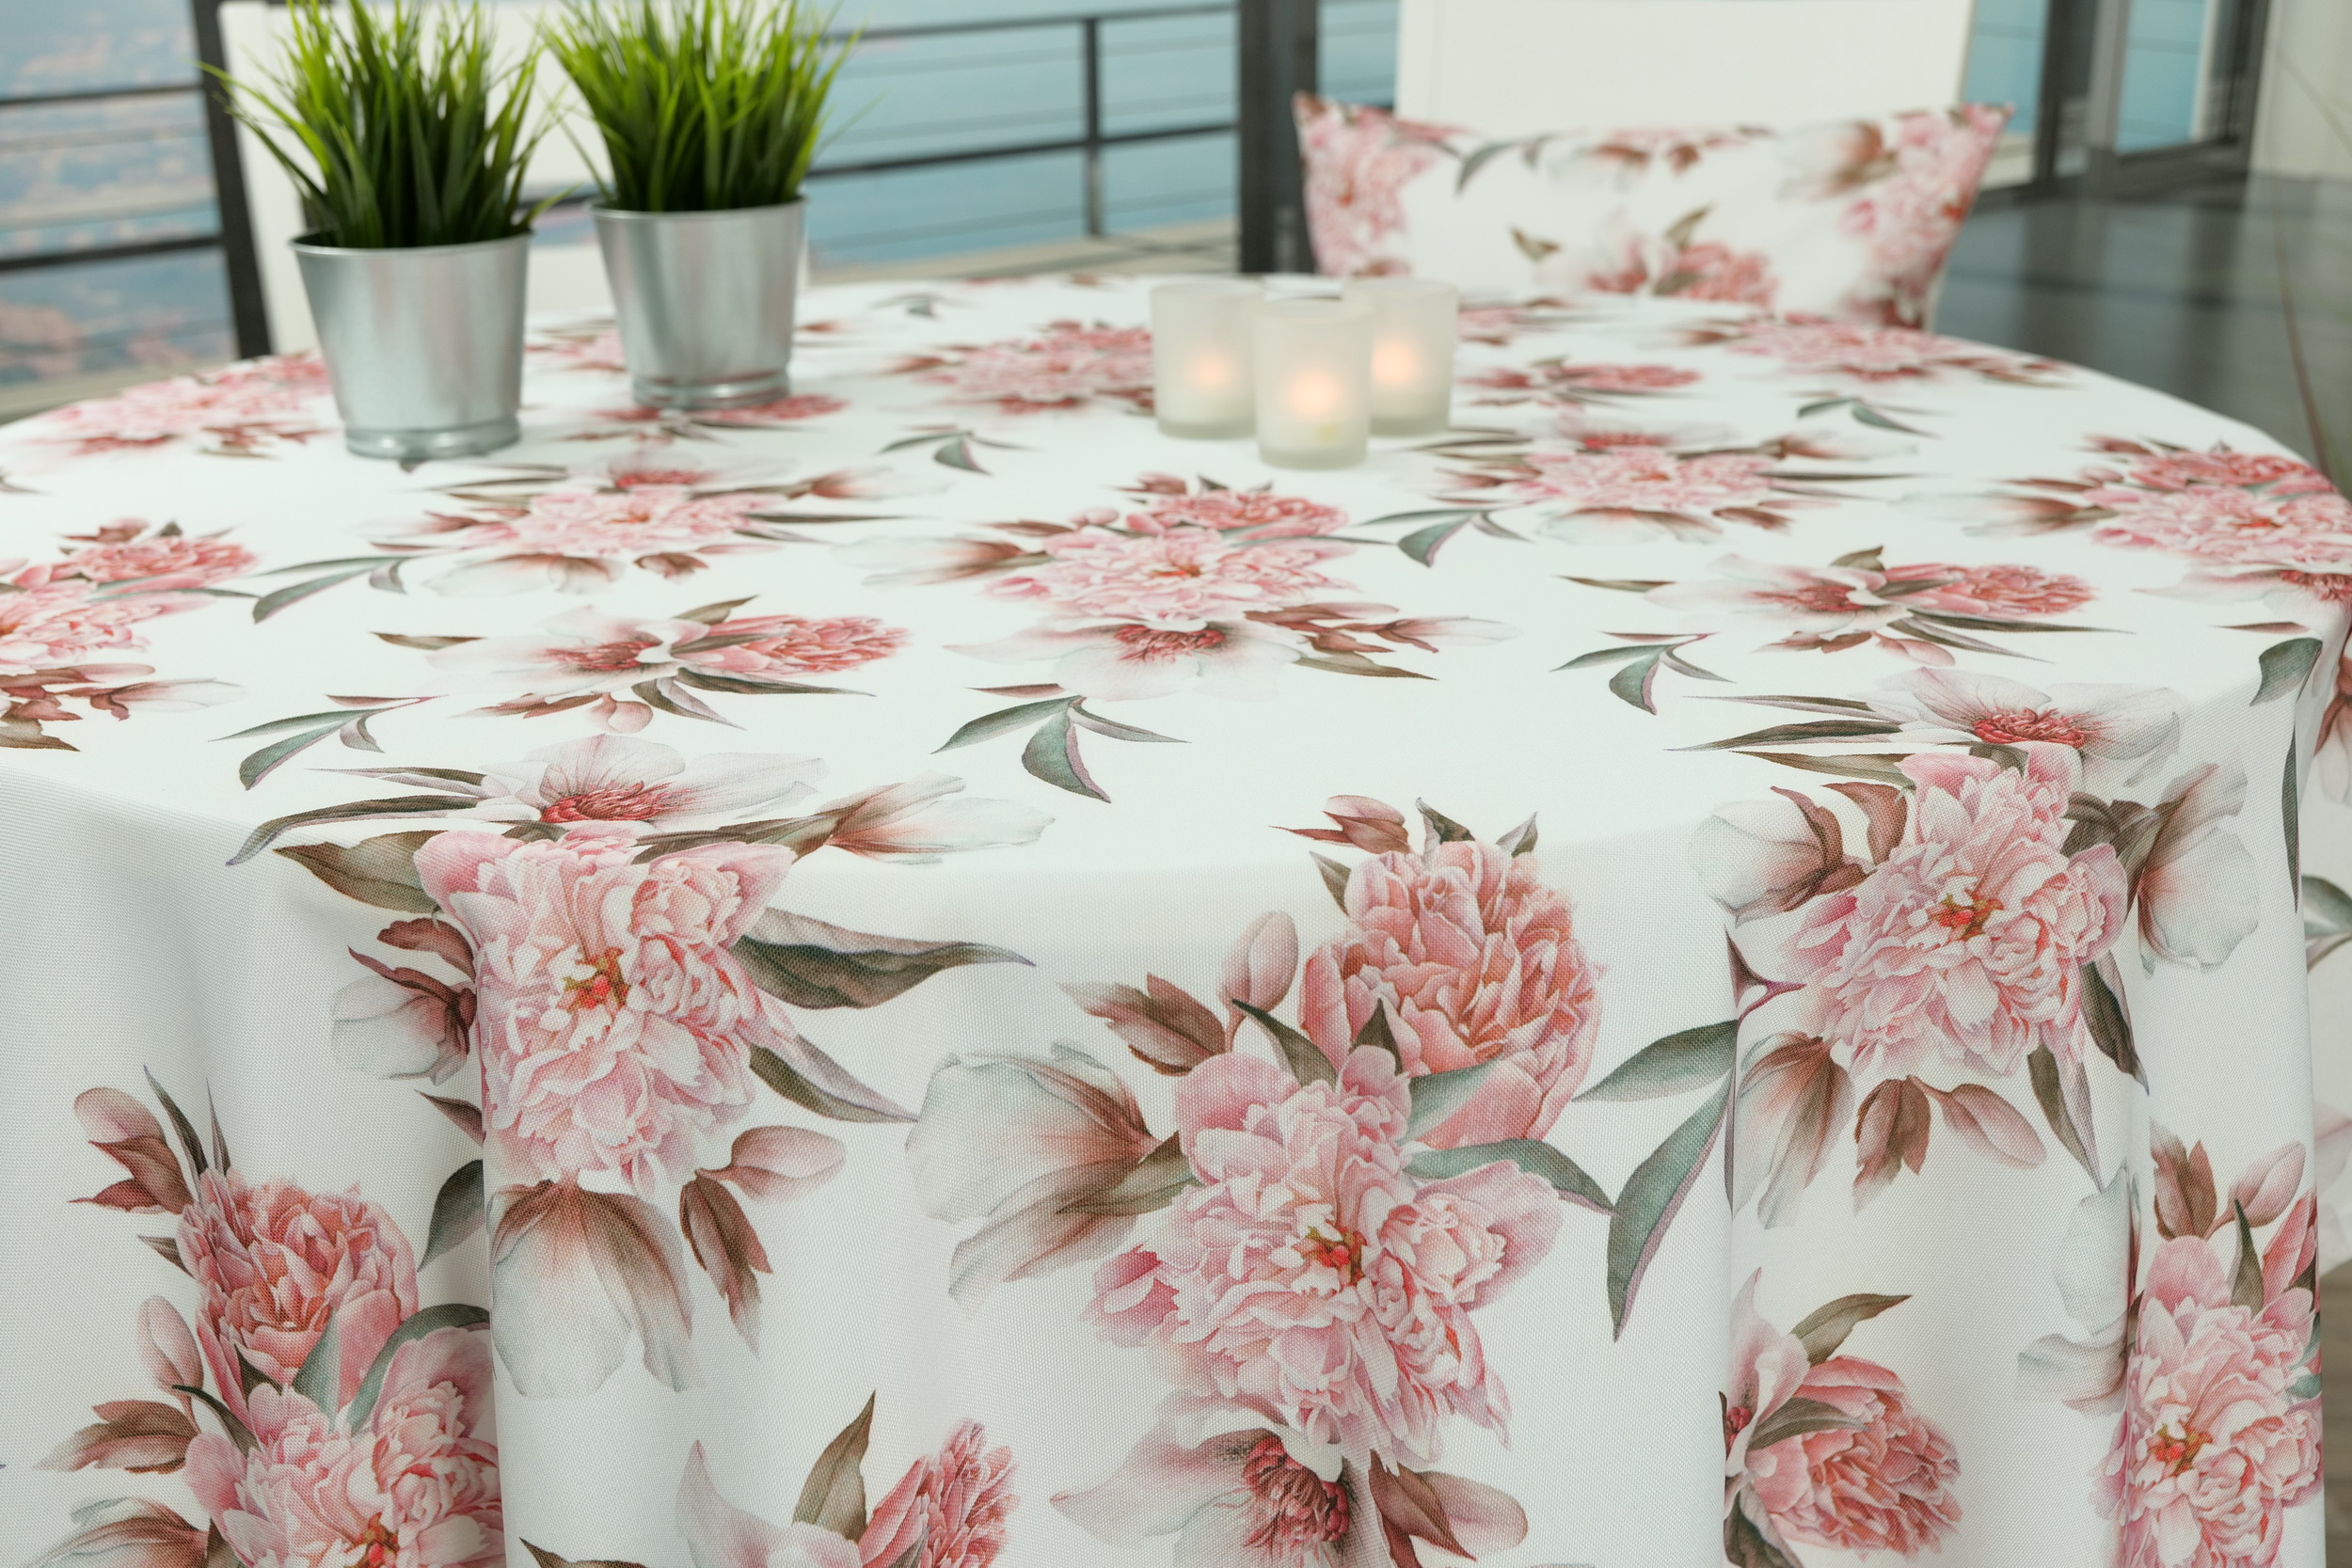 Großgeblümte Tischdecke Weiß Peony ab 80 cm bis 200 cm RUND